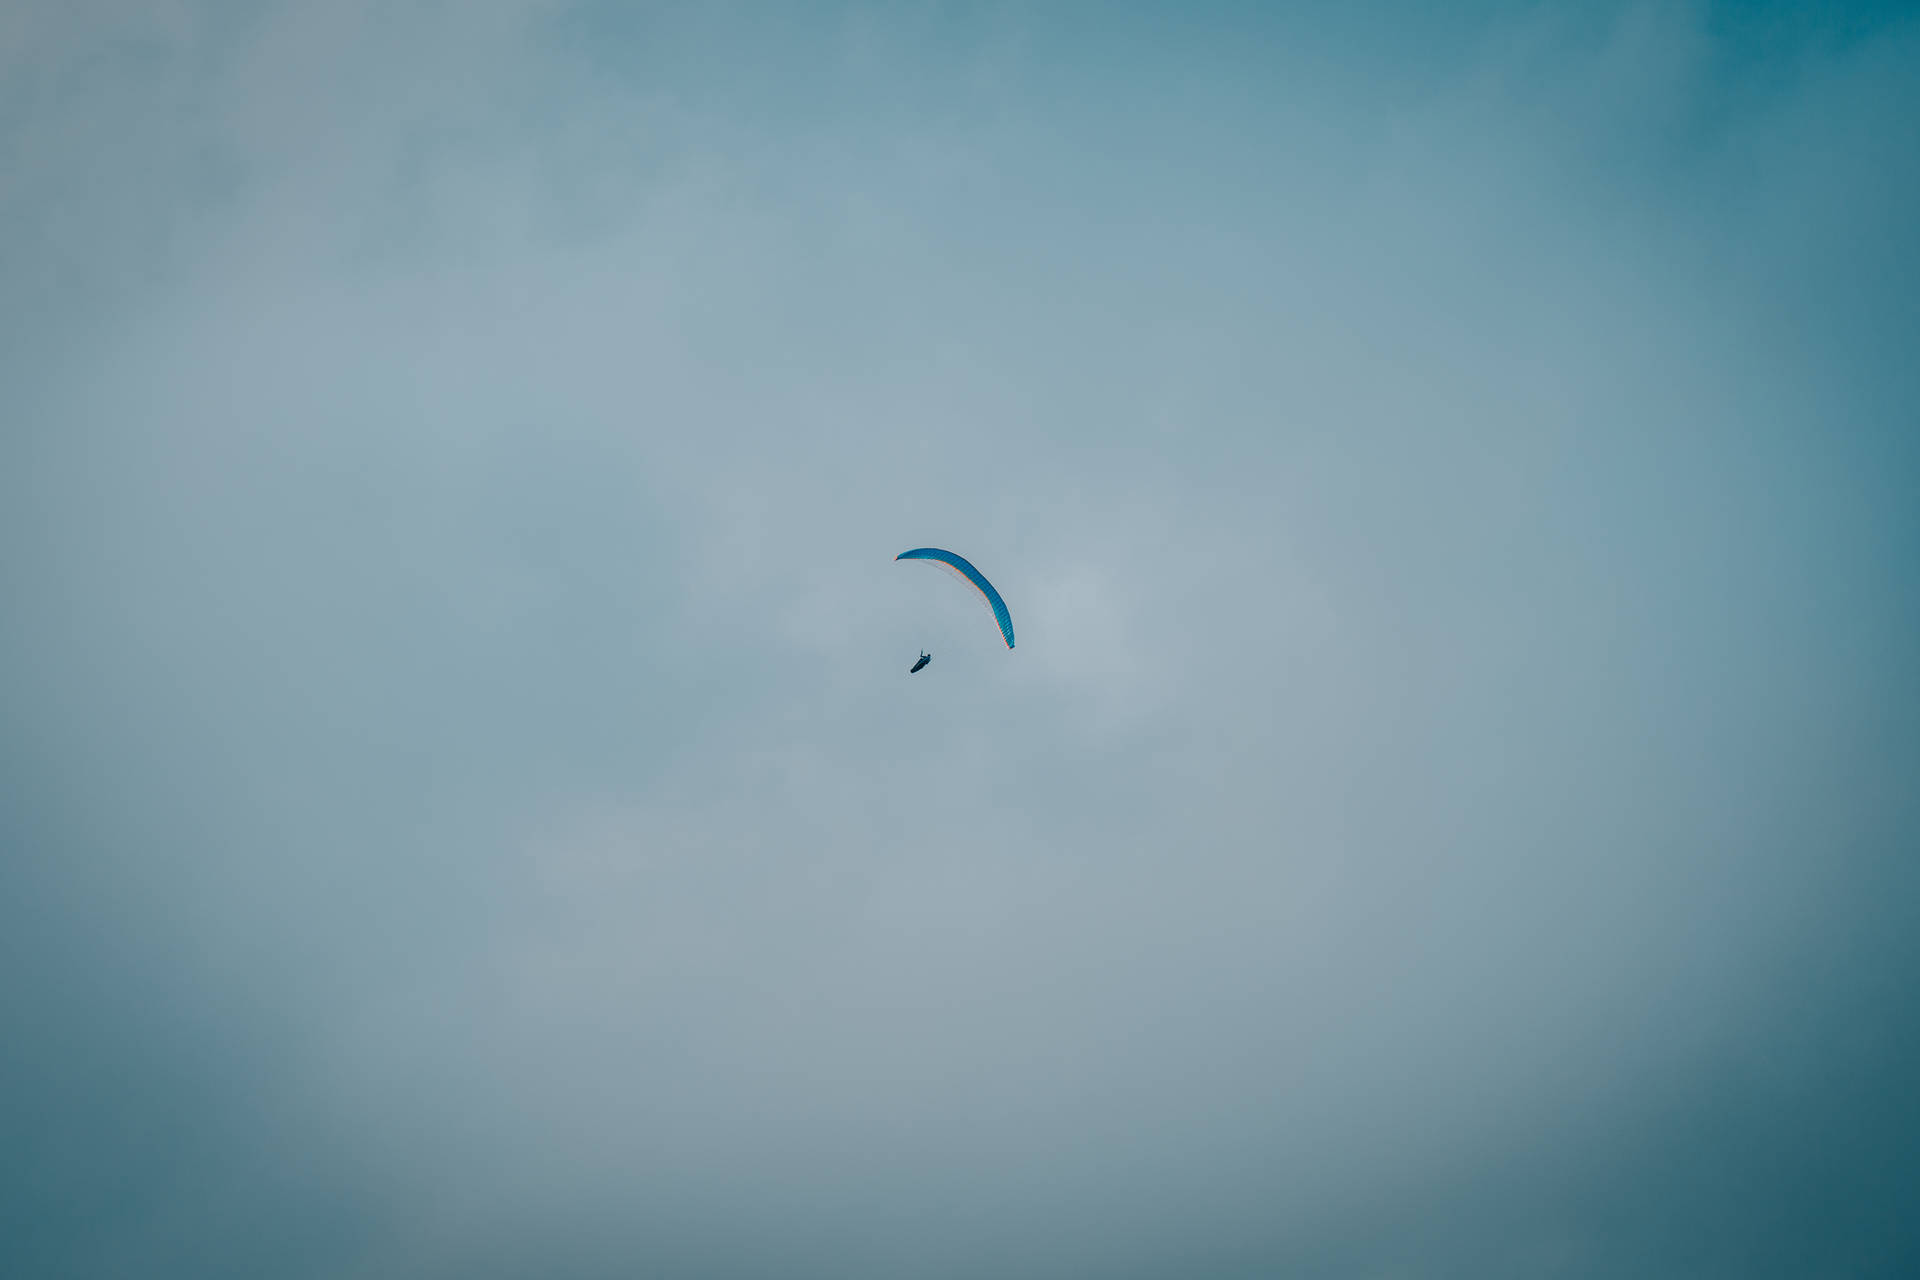 Paraglidingnach Rechts Wallpaper